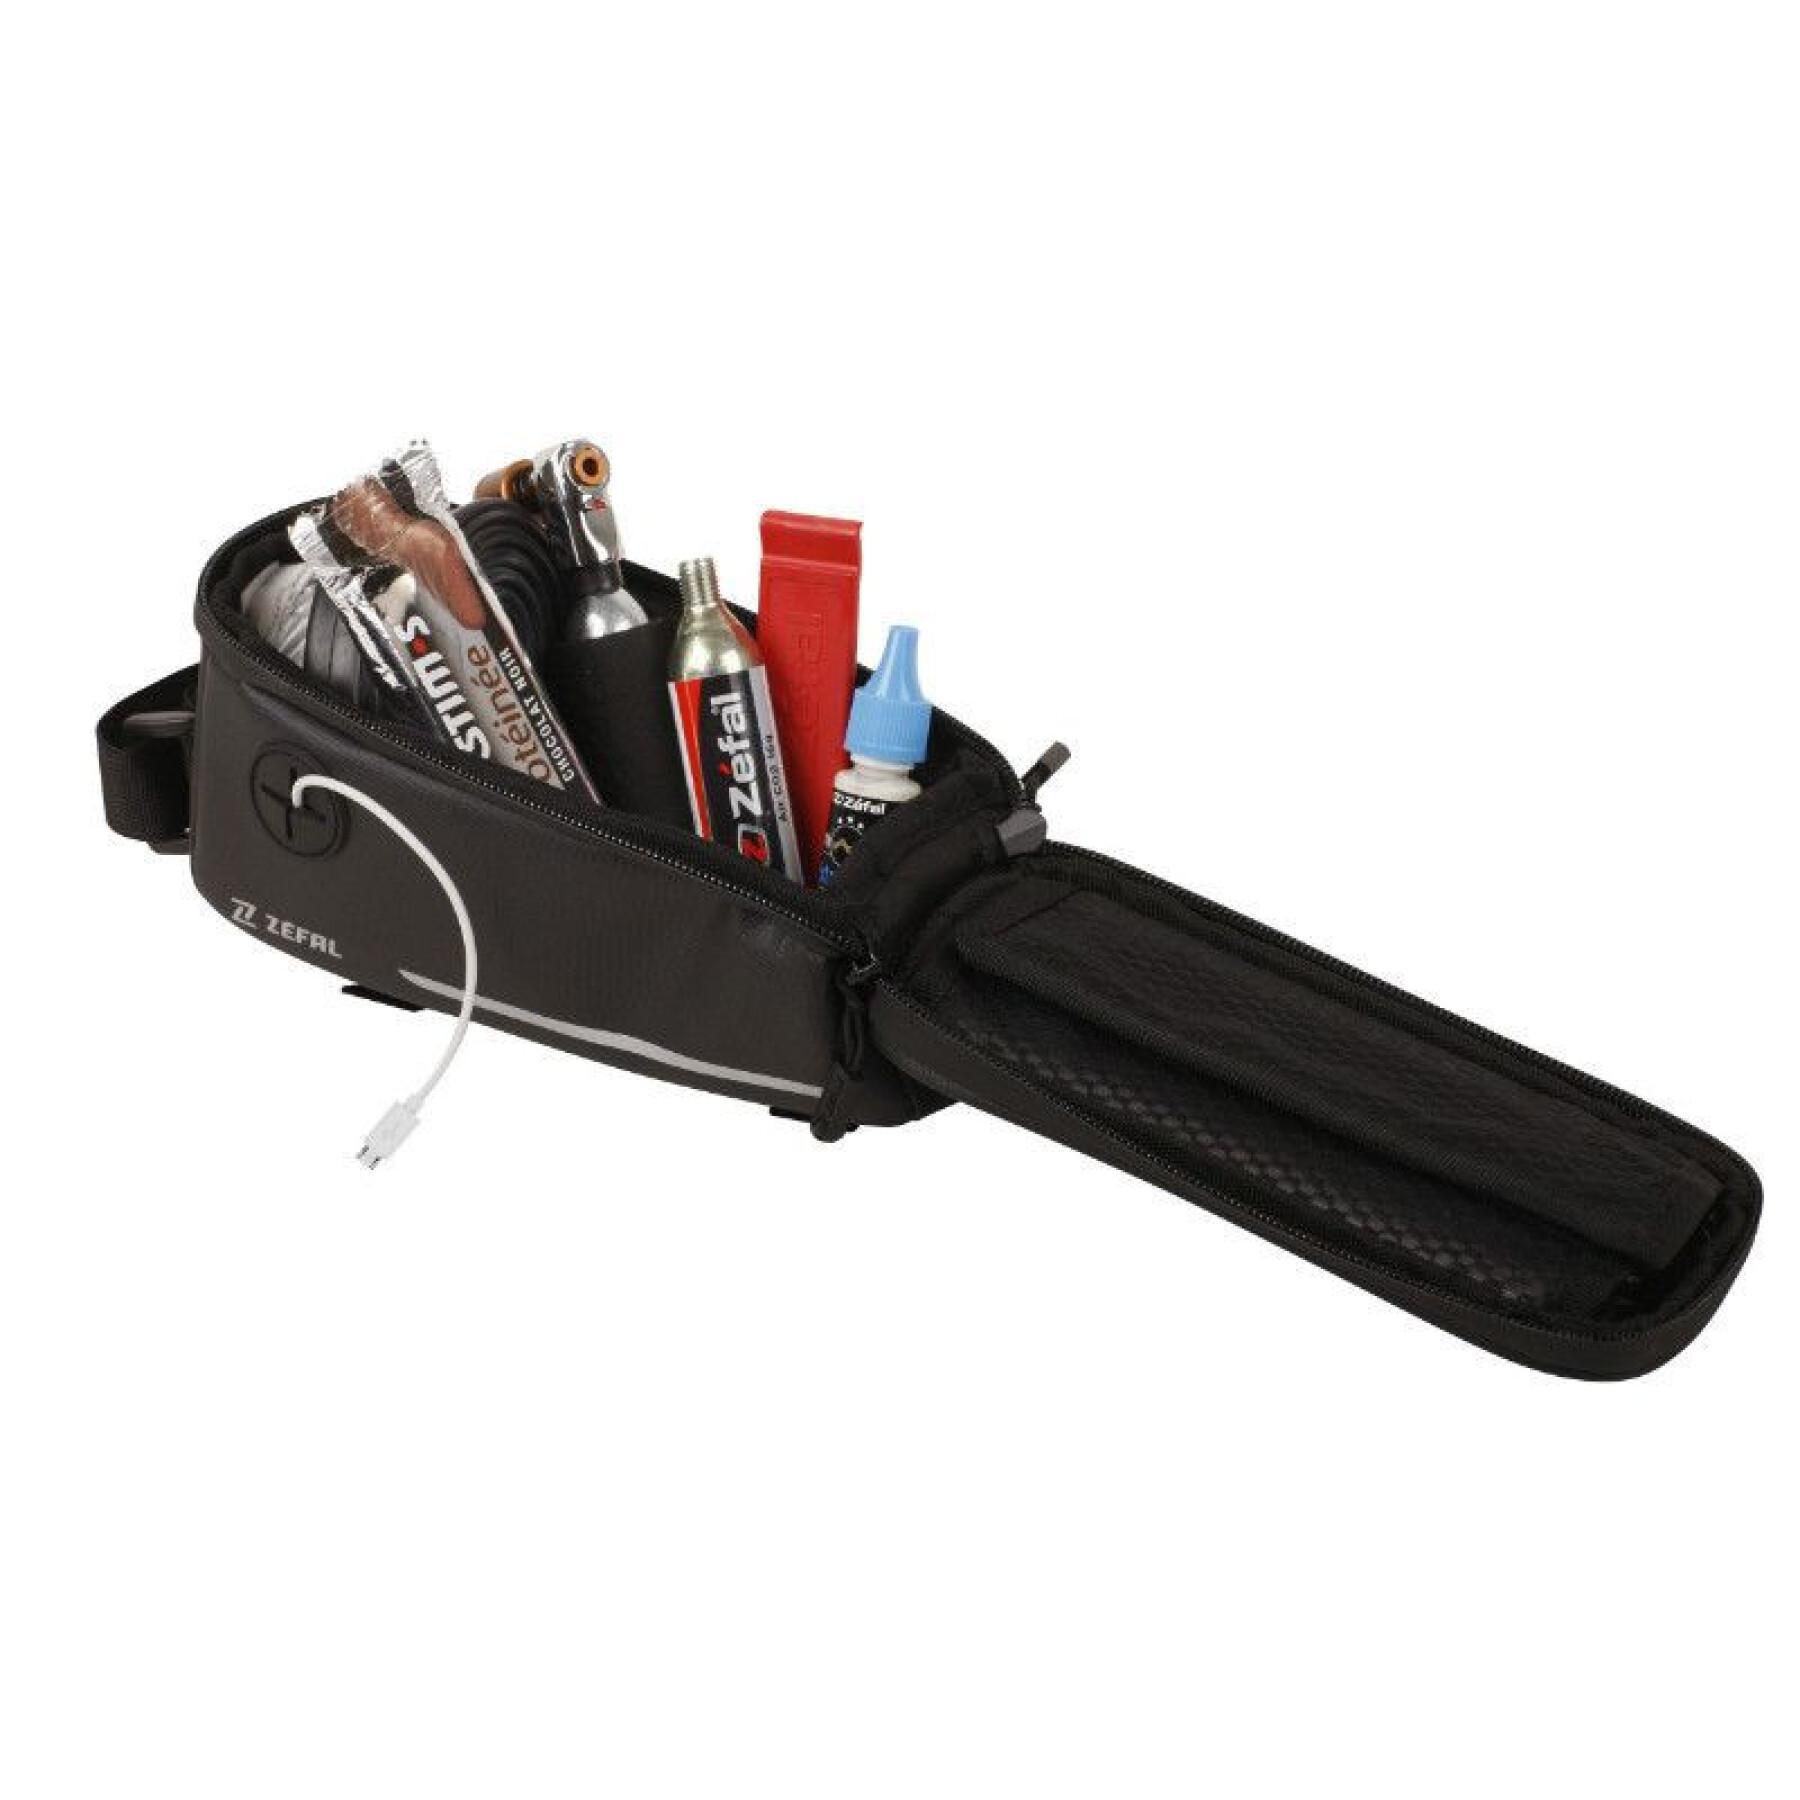 Fahrrad-Rahmentasche mit Smartphone-Halterung wasserdicht Klettverschluss Zefal Z Console T2